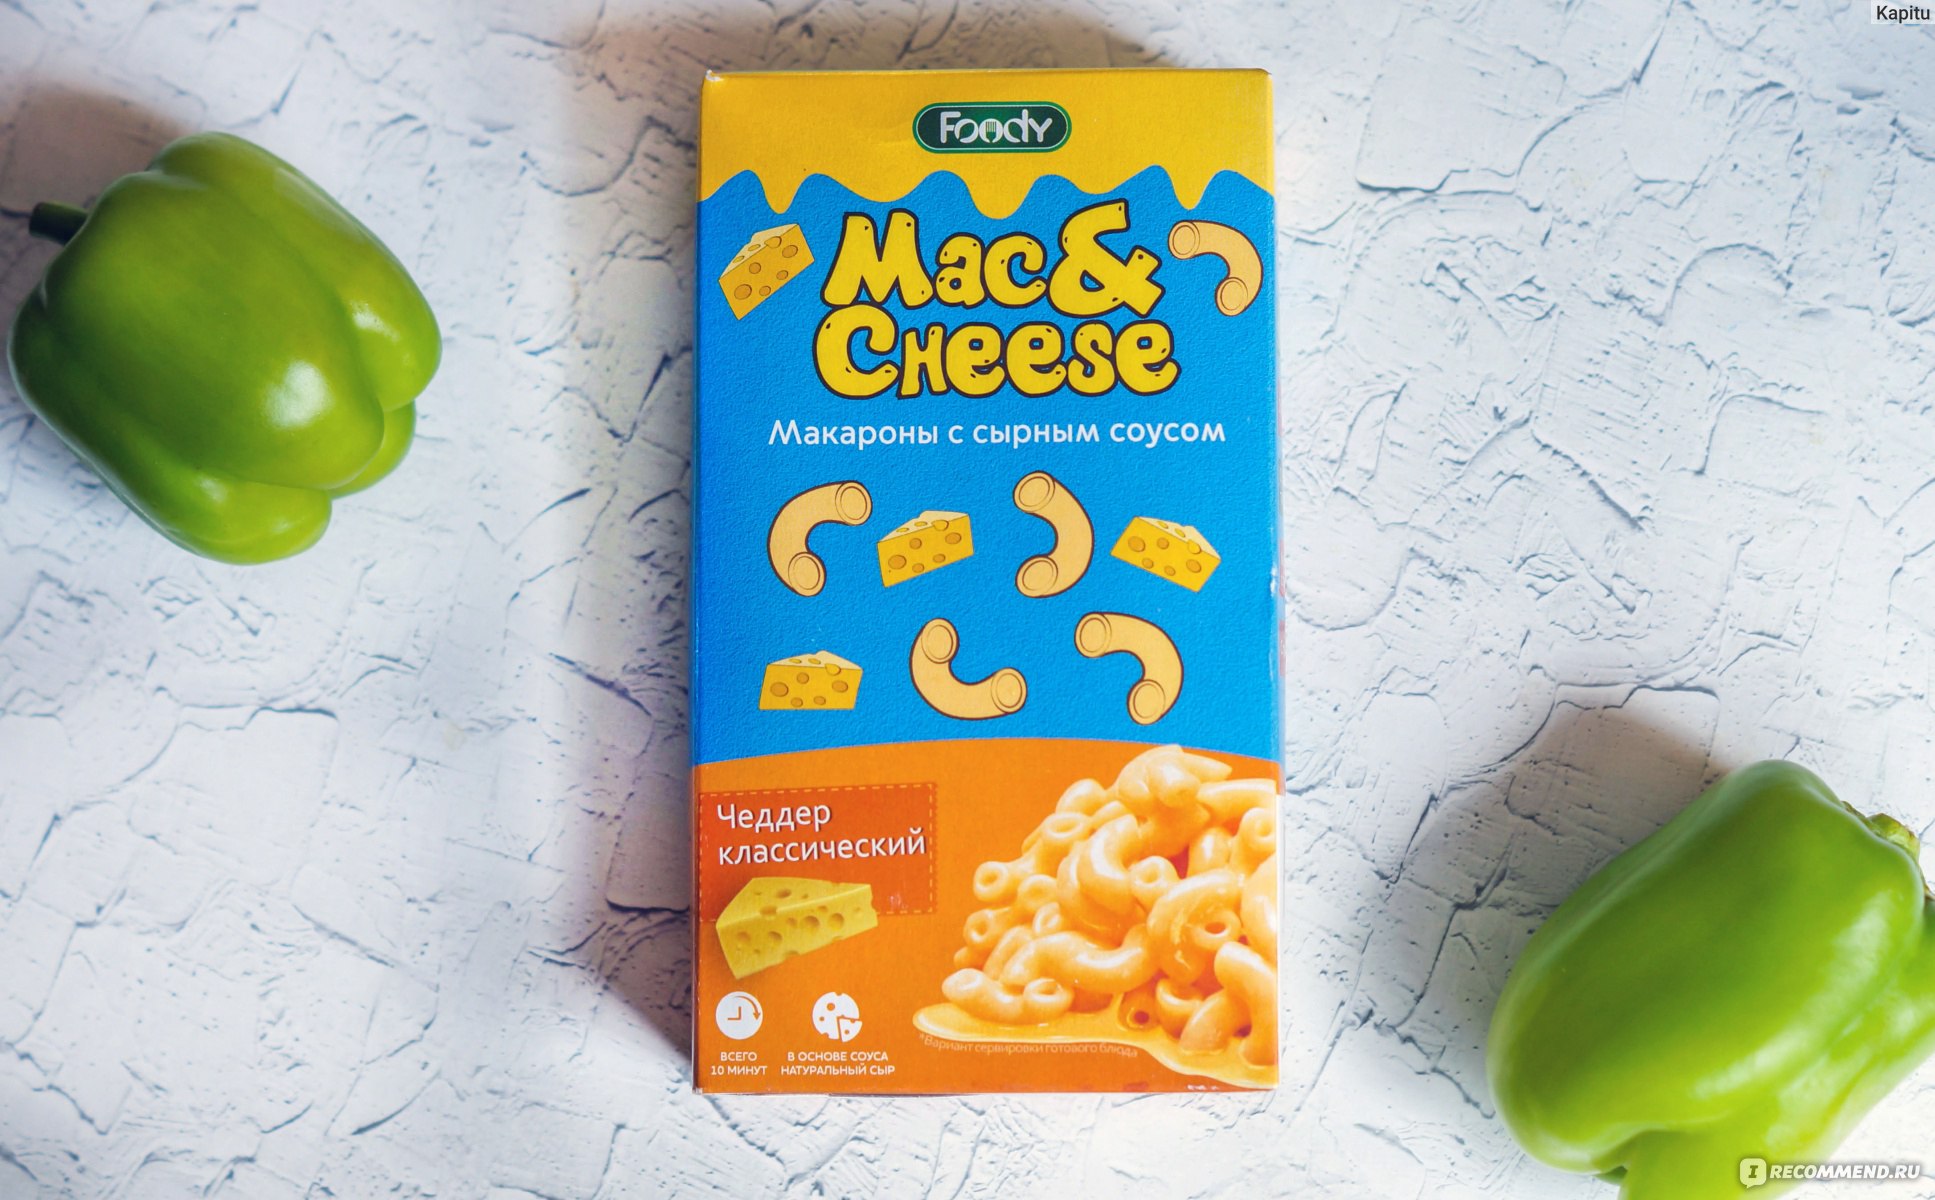 Foody Foody макароны Mac&Cheese с сырным соусом Чеддер классический, 143 г